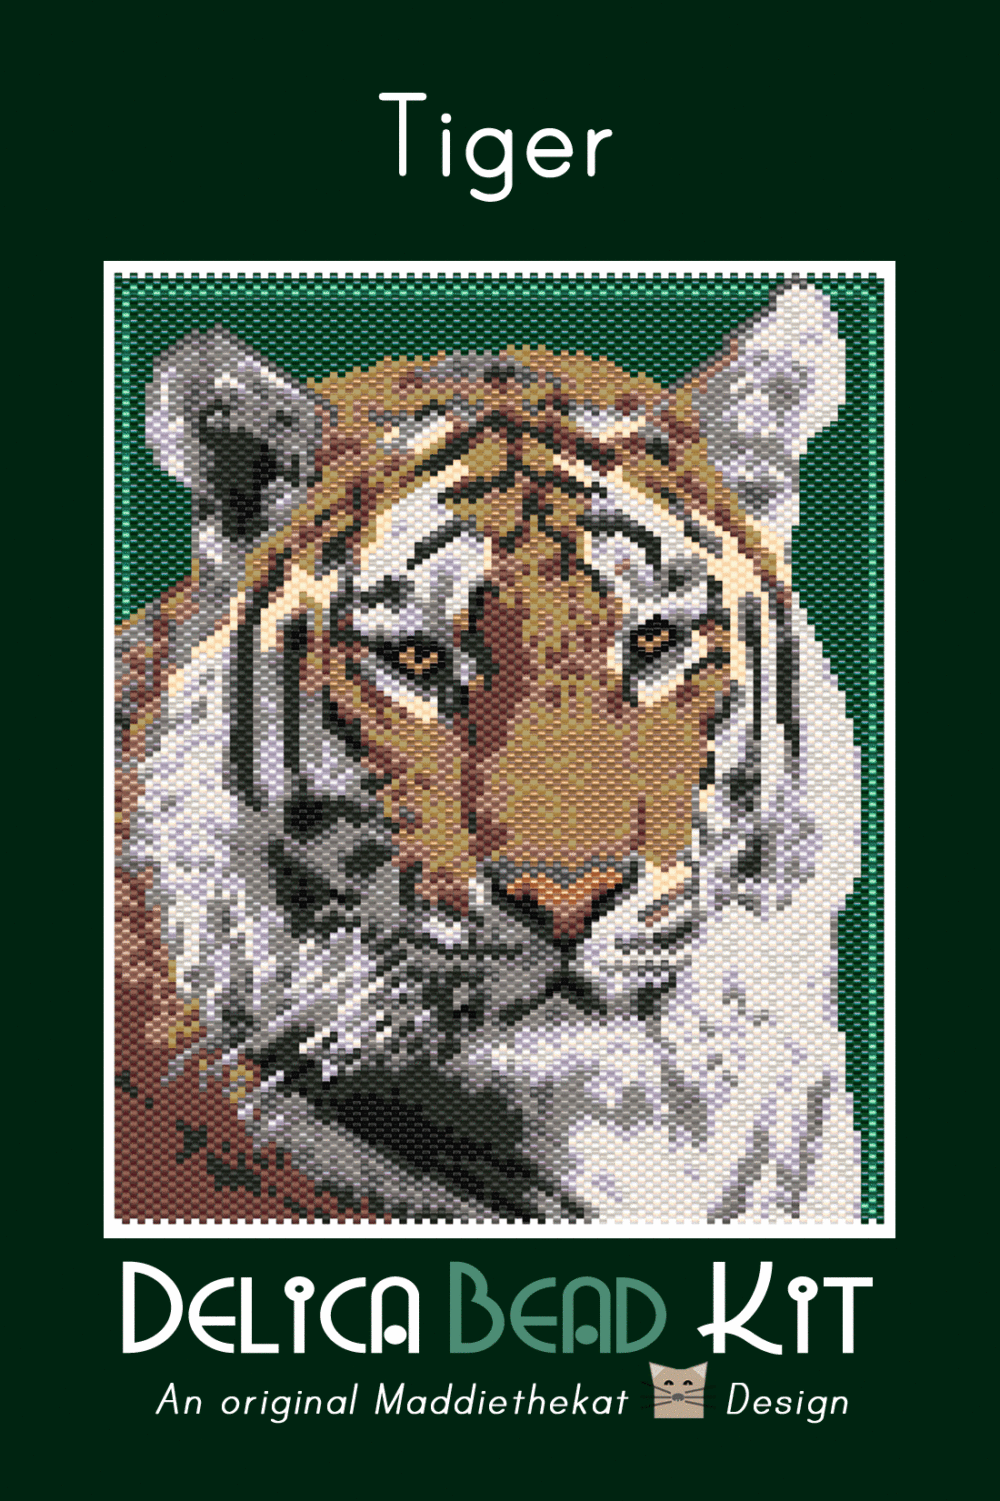 Tiger 01 Larger Peyote Bead Pattern PDF or Bead Kit